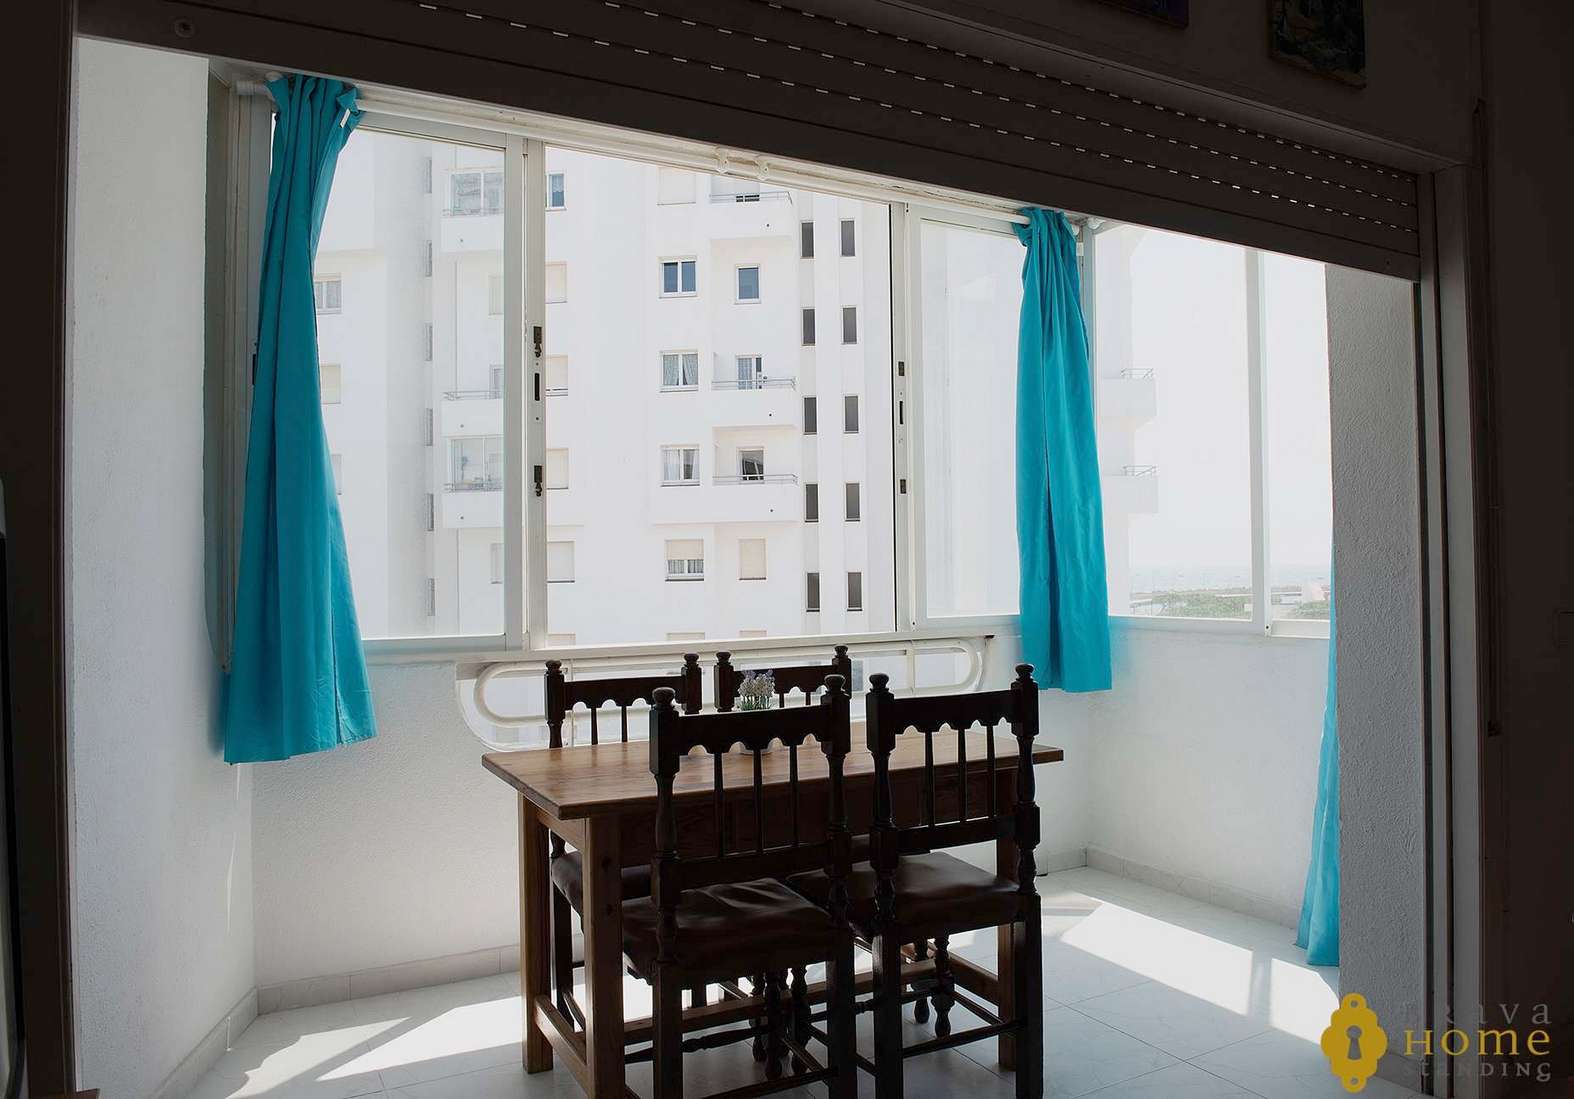 Beautiful apartment with sea view, for sale in Rosas - Santa Margarita